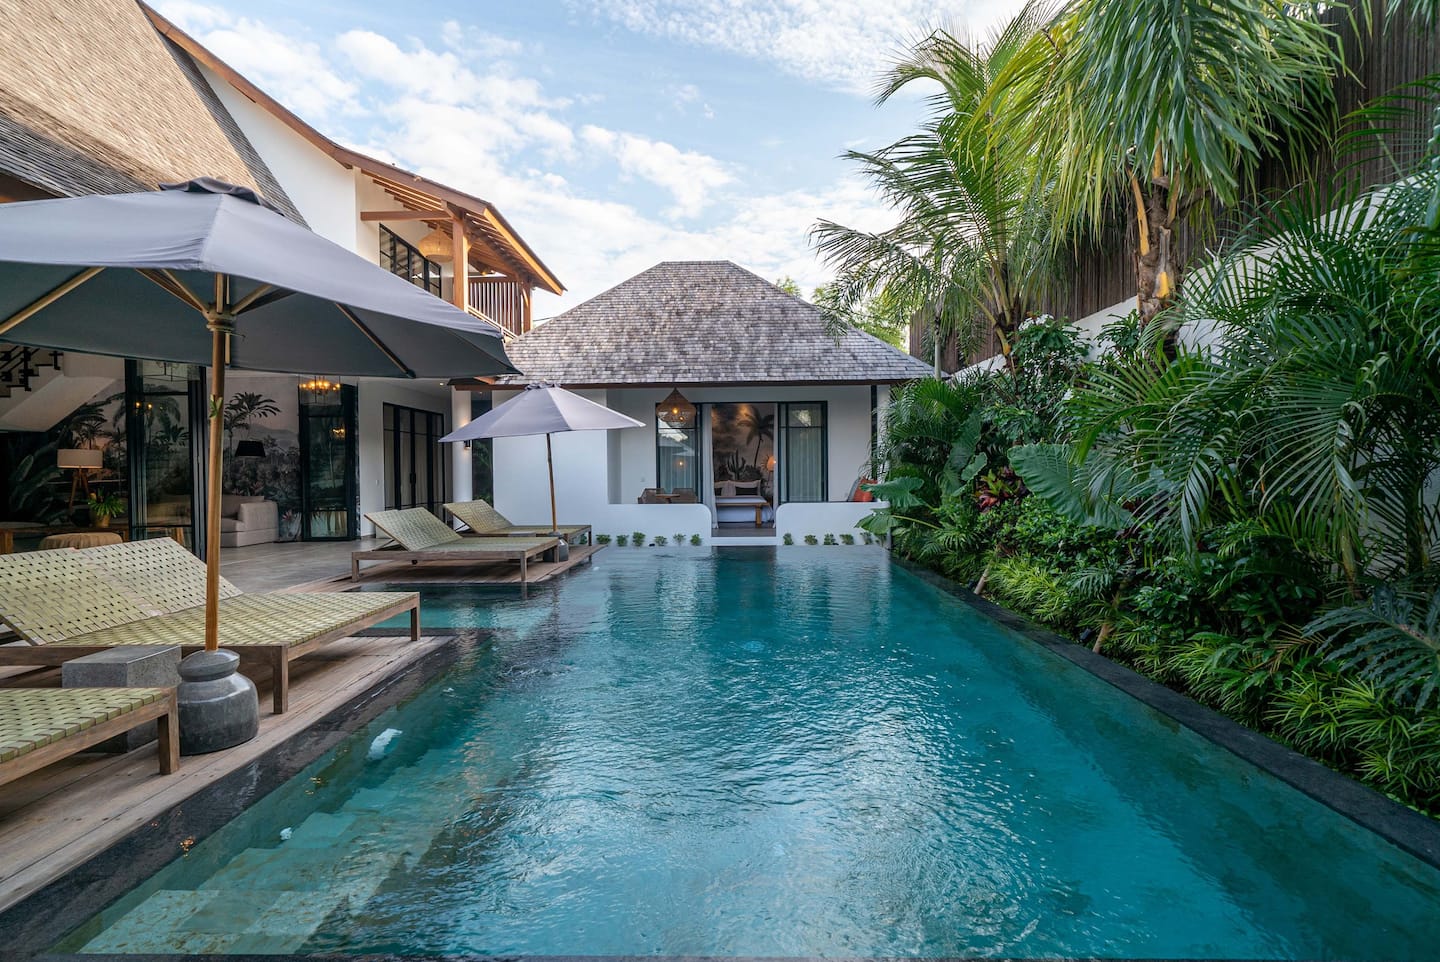 Alfred in Bali - Villa Nusantara Pool